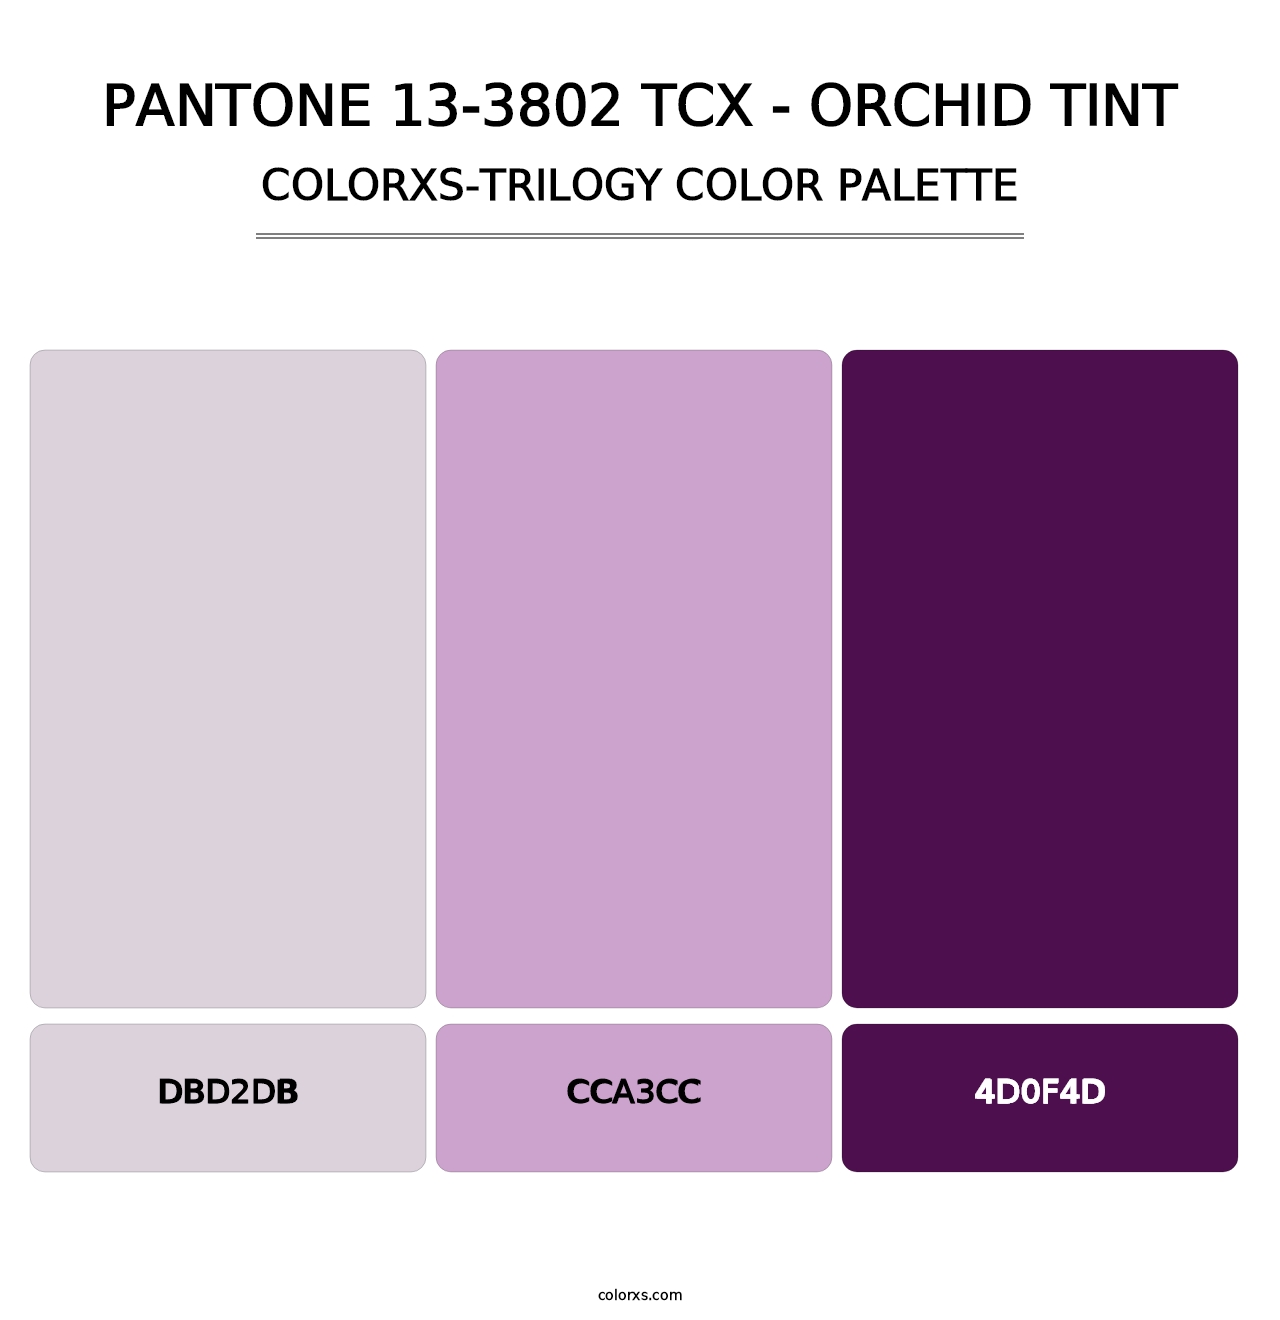 PANTONE 13-3802 TCX - Orchid Tint - Colorxs Trilogy Palette